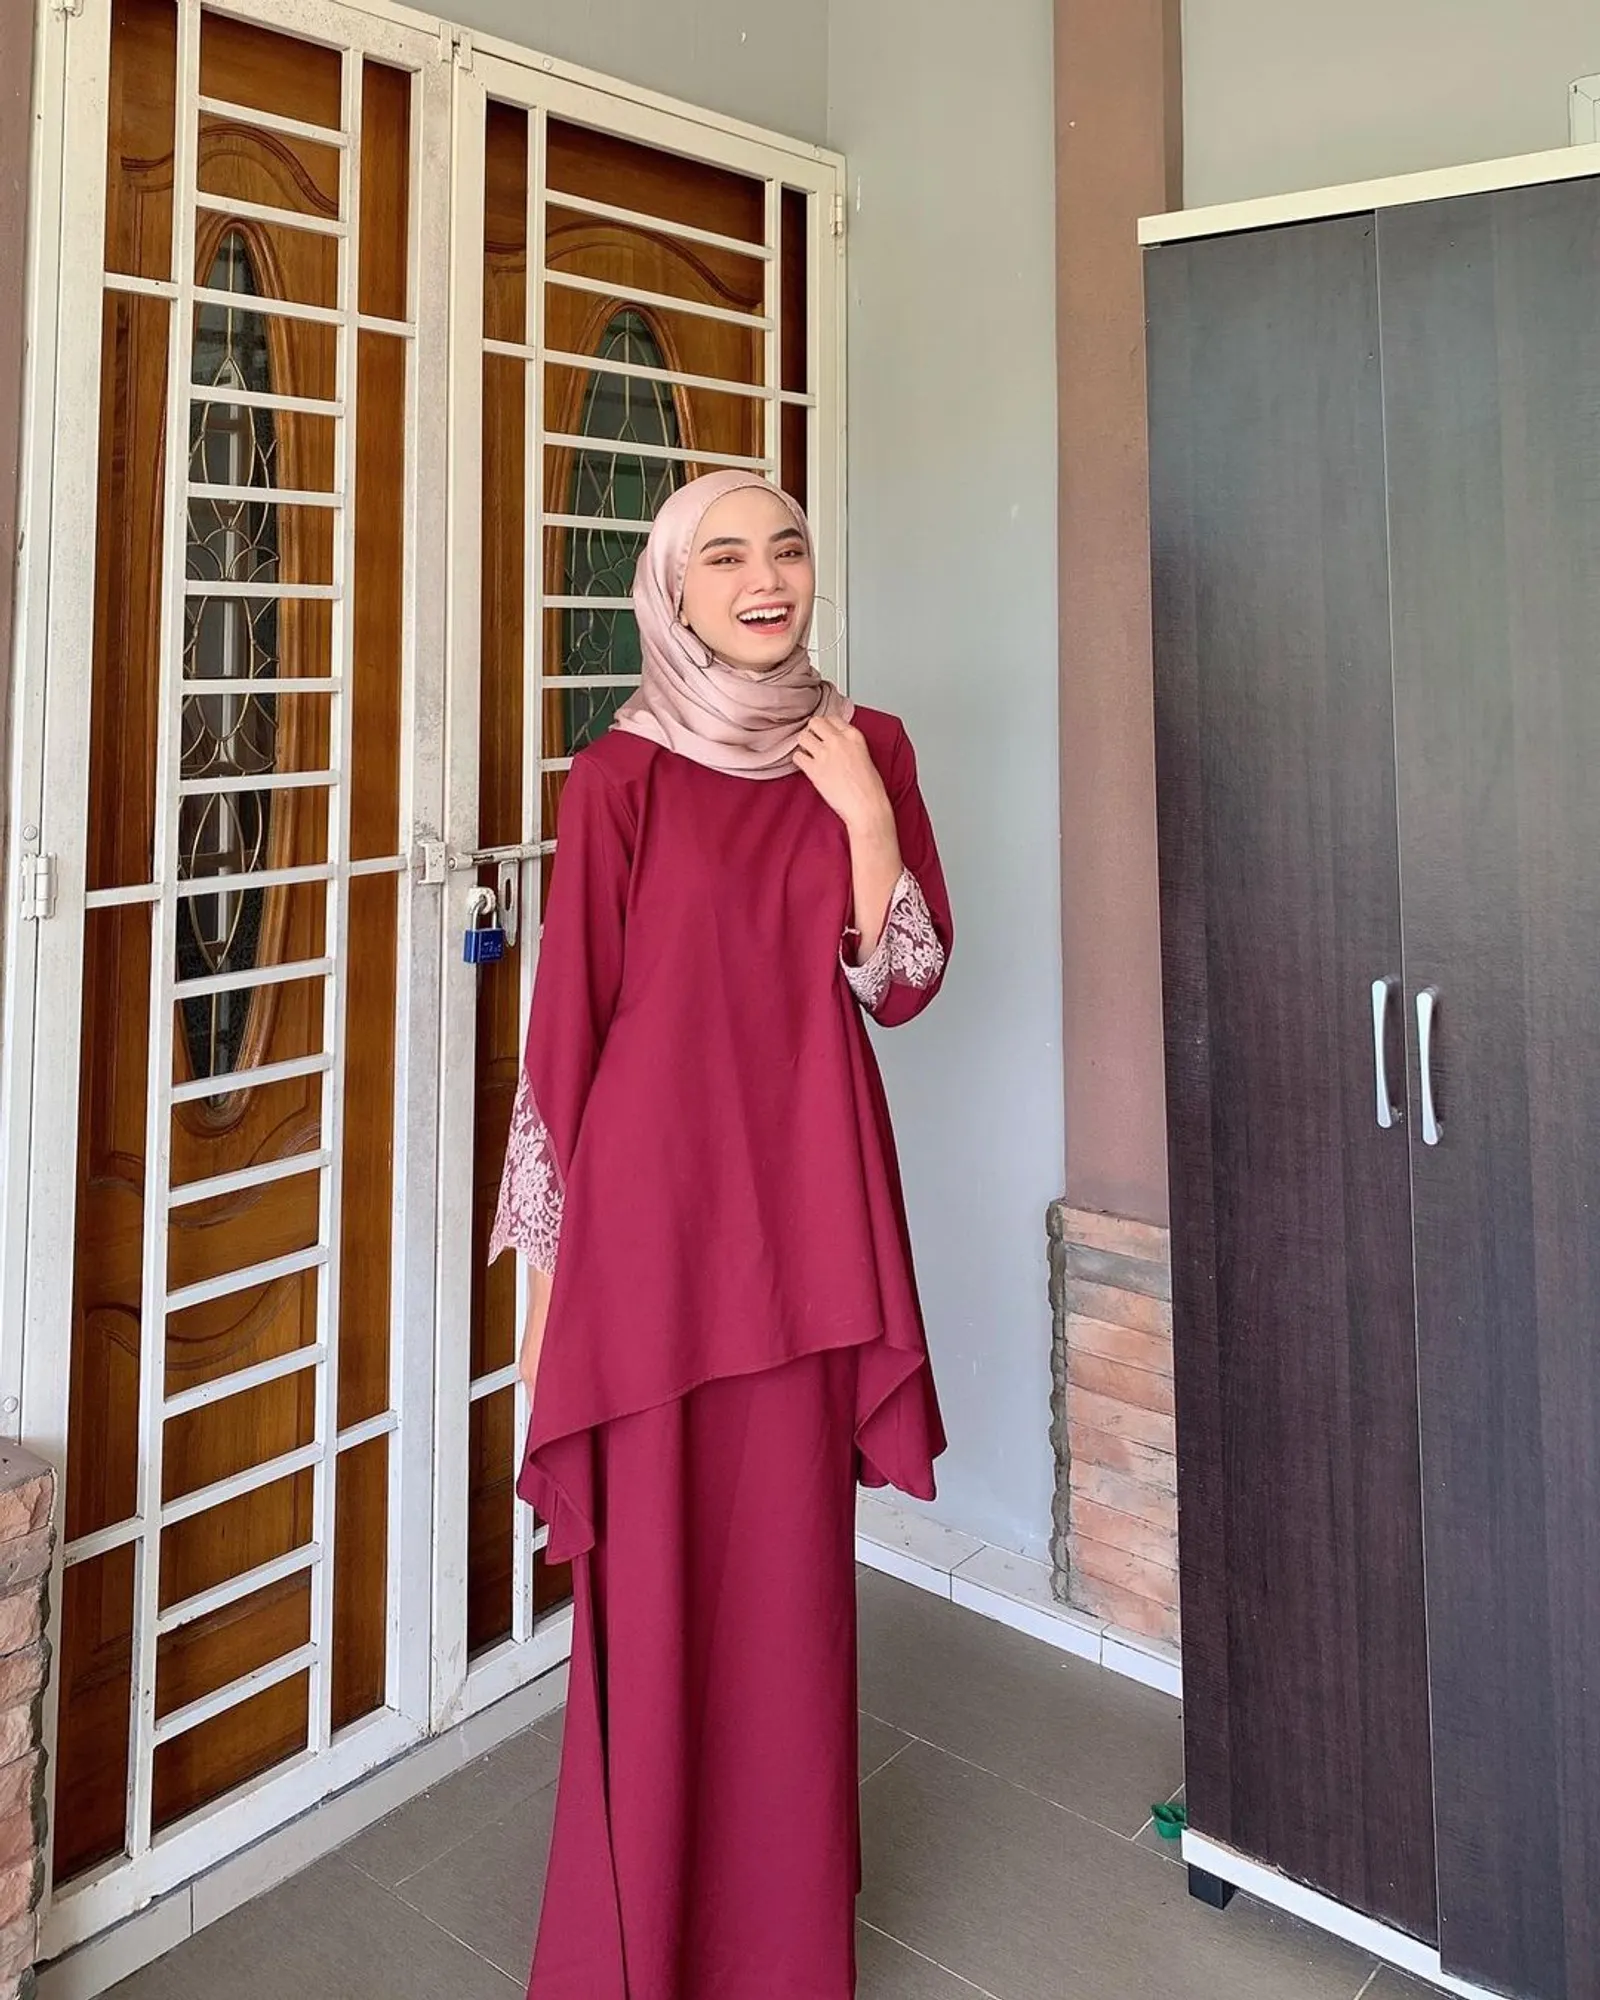 Baju Maroon Cocok dengan Jilbab Warna Apa? Ini 10 Rekomendasinya!